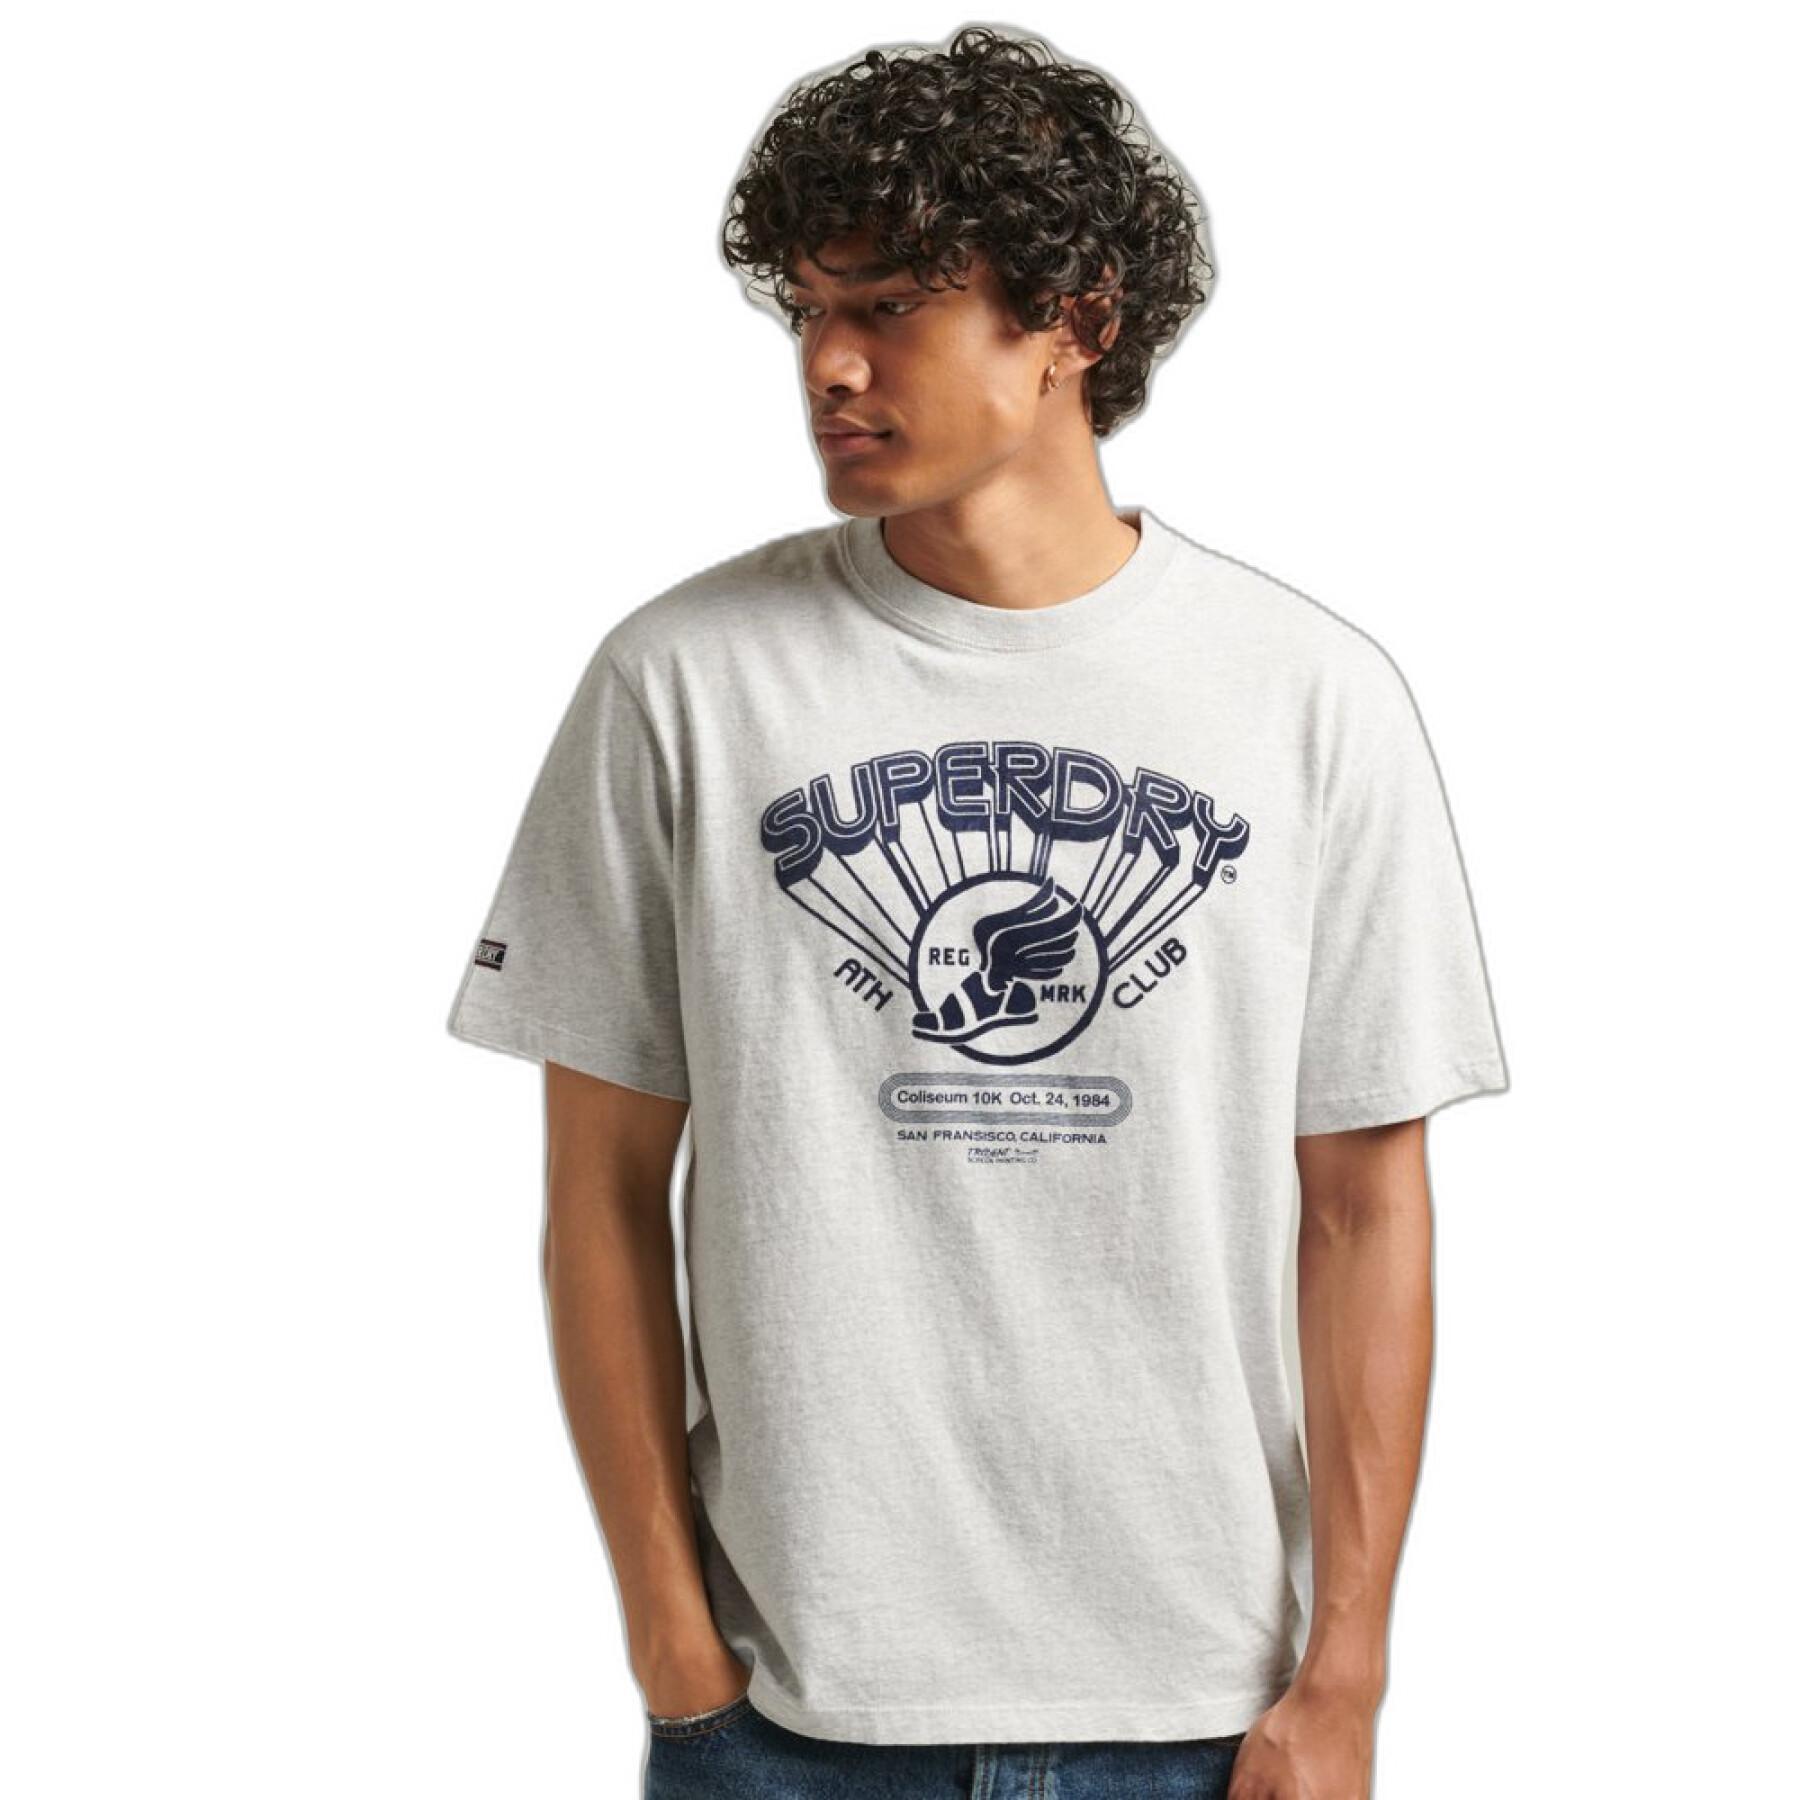 Kleidung Herren - Club - Superdry aus T-Shirt & Bio-Baumwolle - Vintage Polohemden Athletic T-Shirts